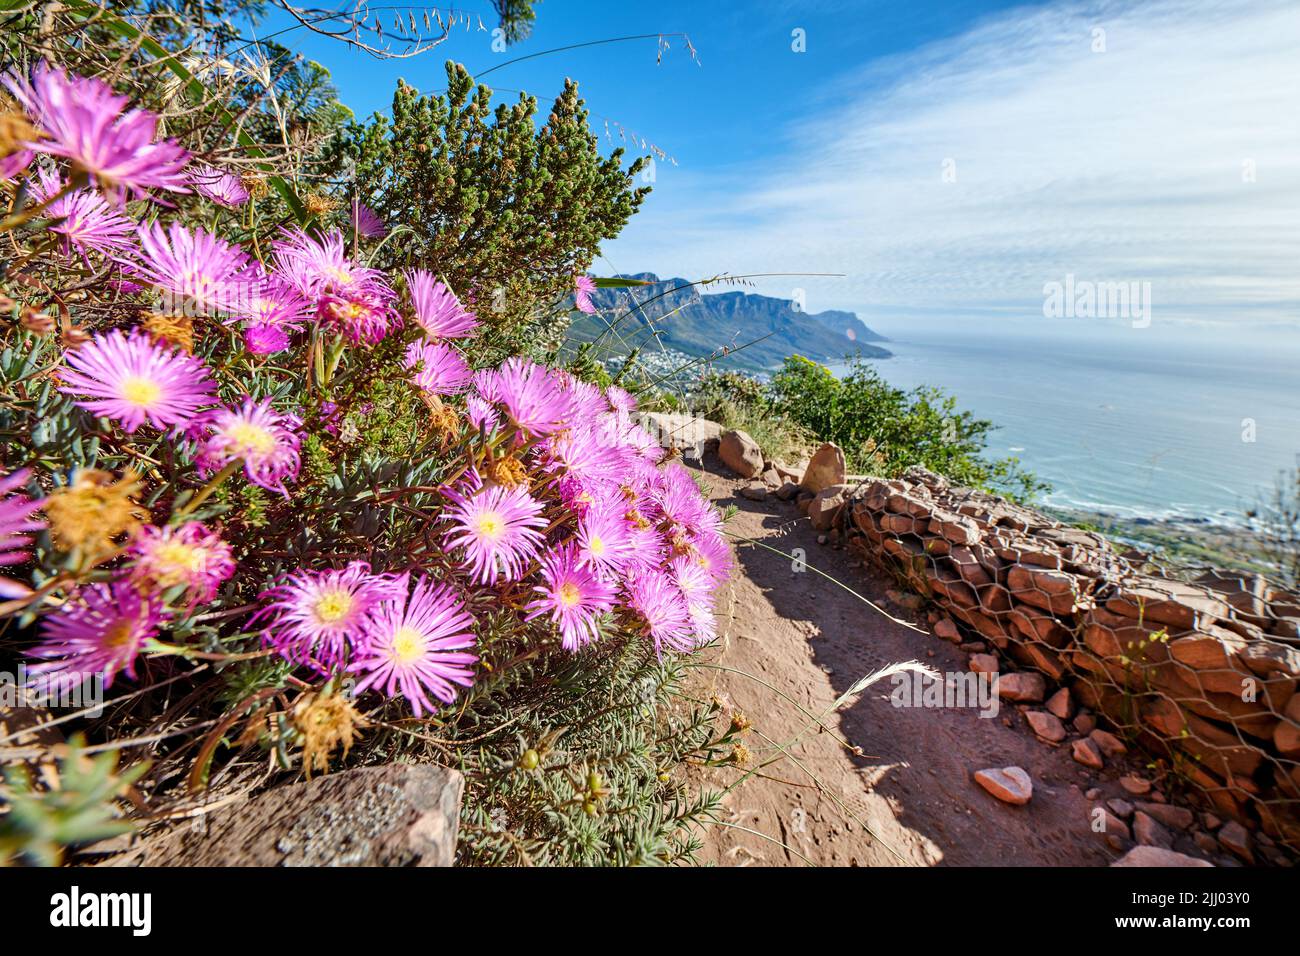 Rosa Blumen wachsen auf einem Berg mit zerklüfteten Wanderweg und blauem Himmel Hintergrund am Meer. Bunte Flora in der carpobrotus edulis oder Eispflanze Stockfoto